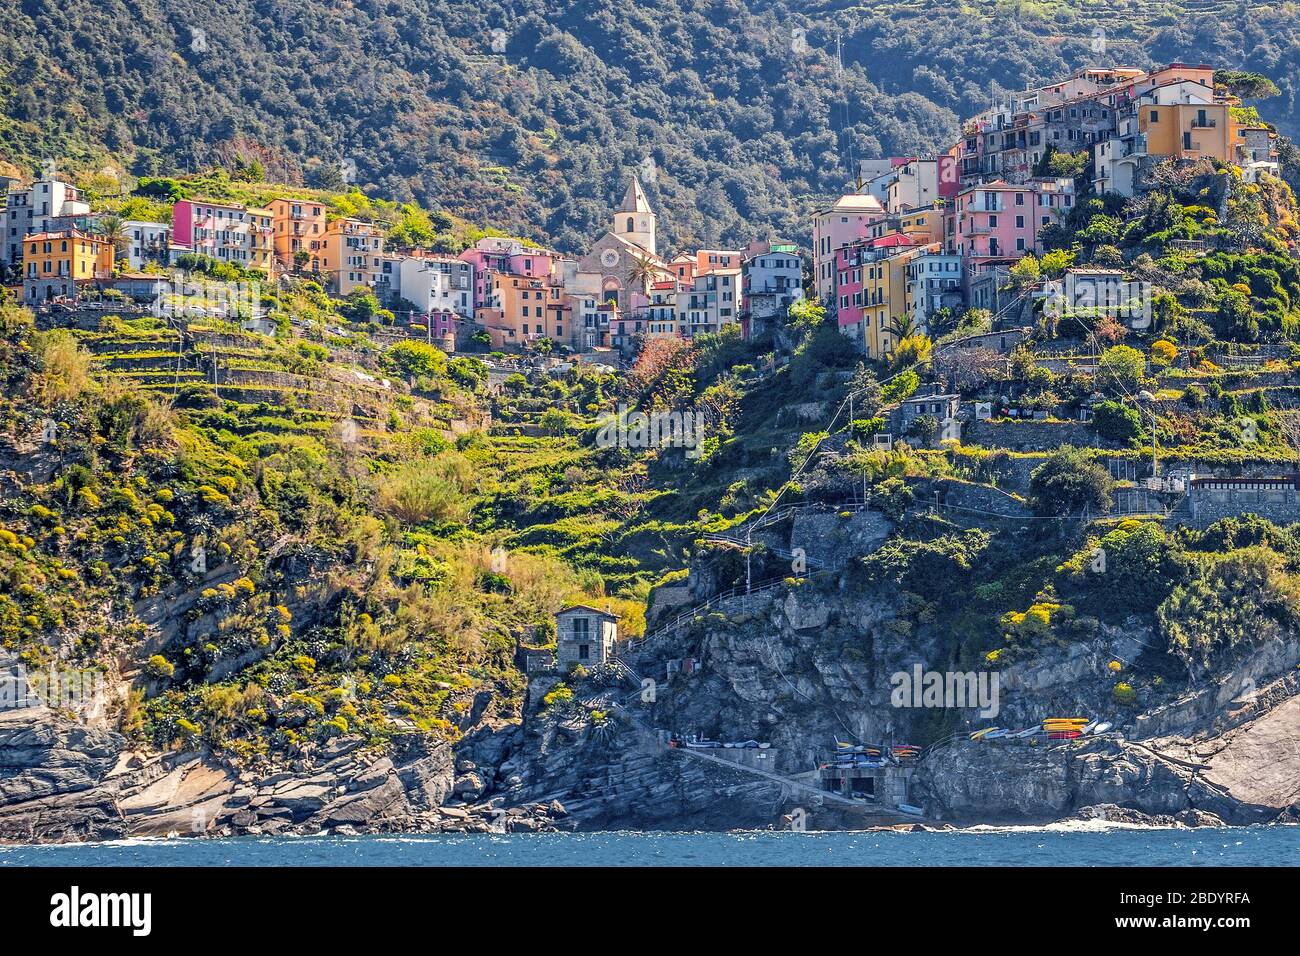 La partie du village de Corniglia Cinque Terre, La Spezia, ligurie, italie Banque D'Images